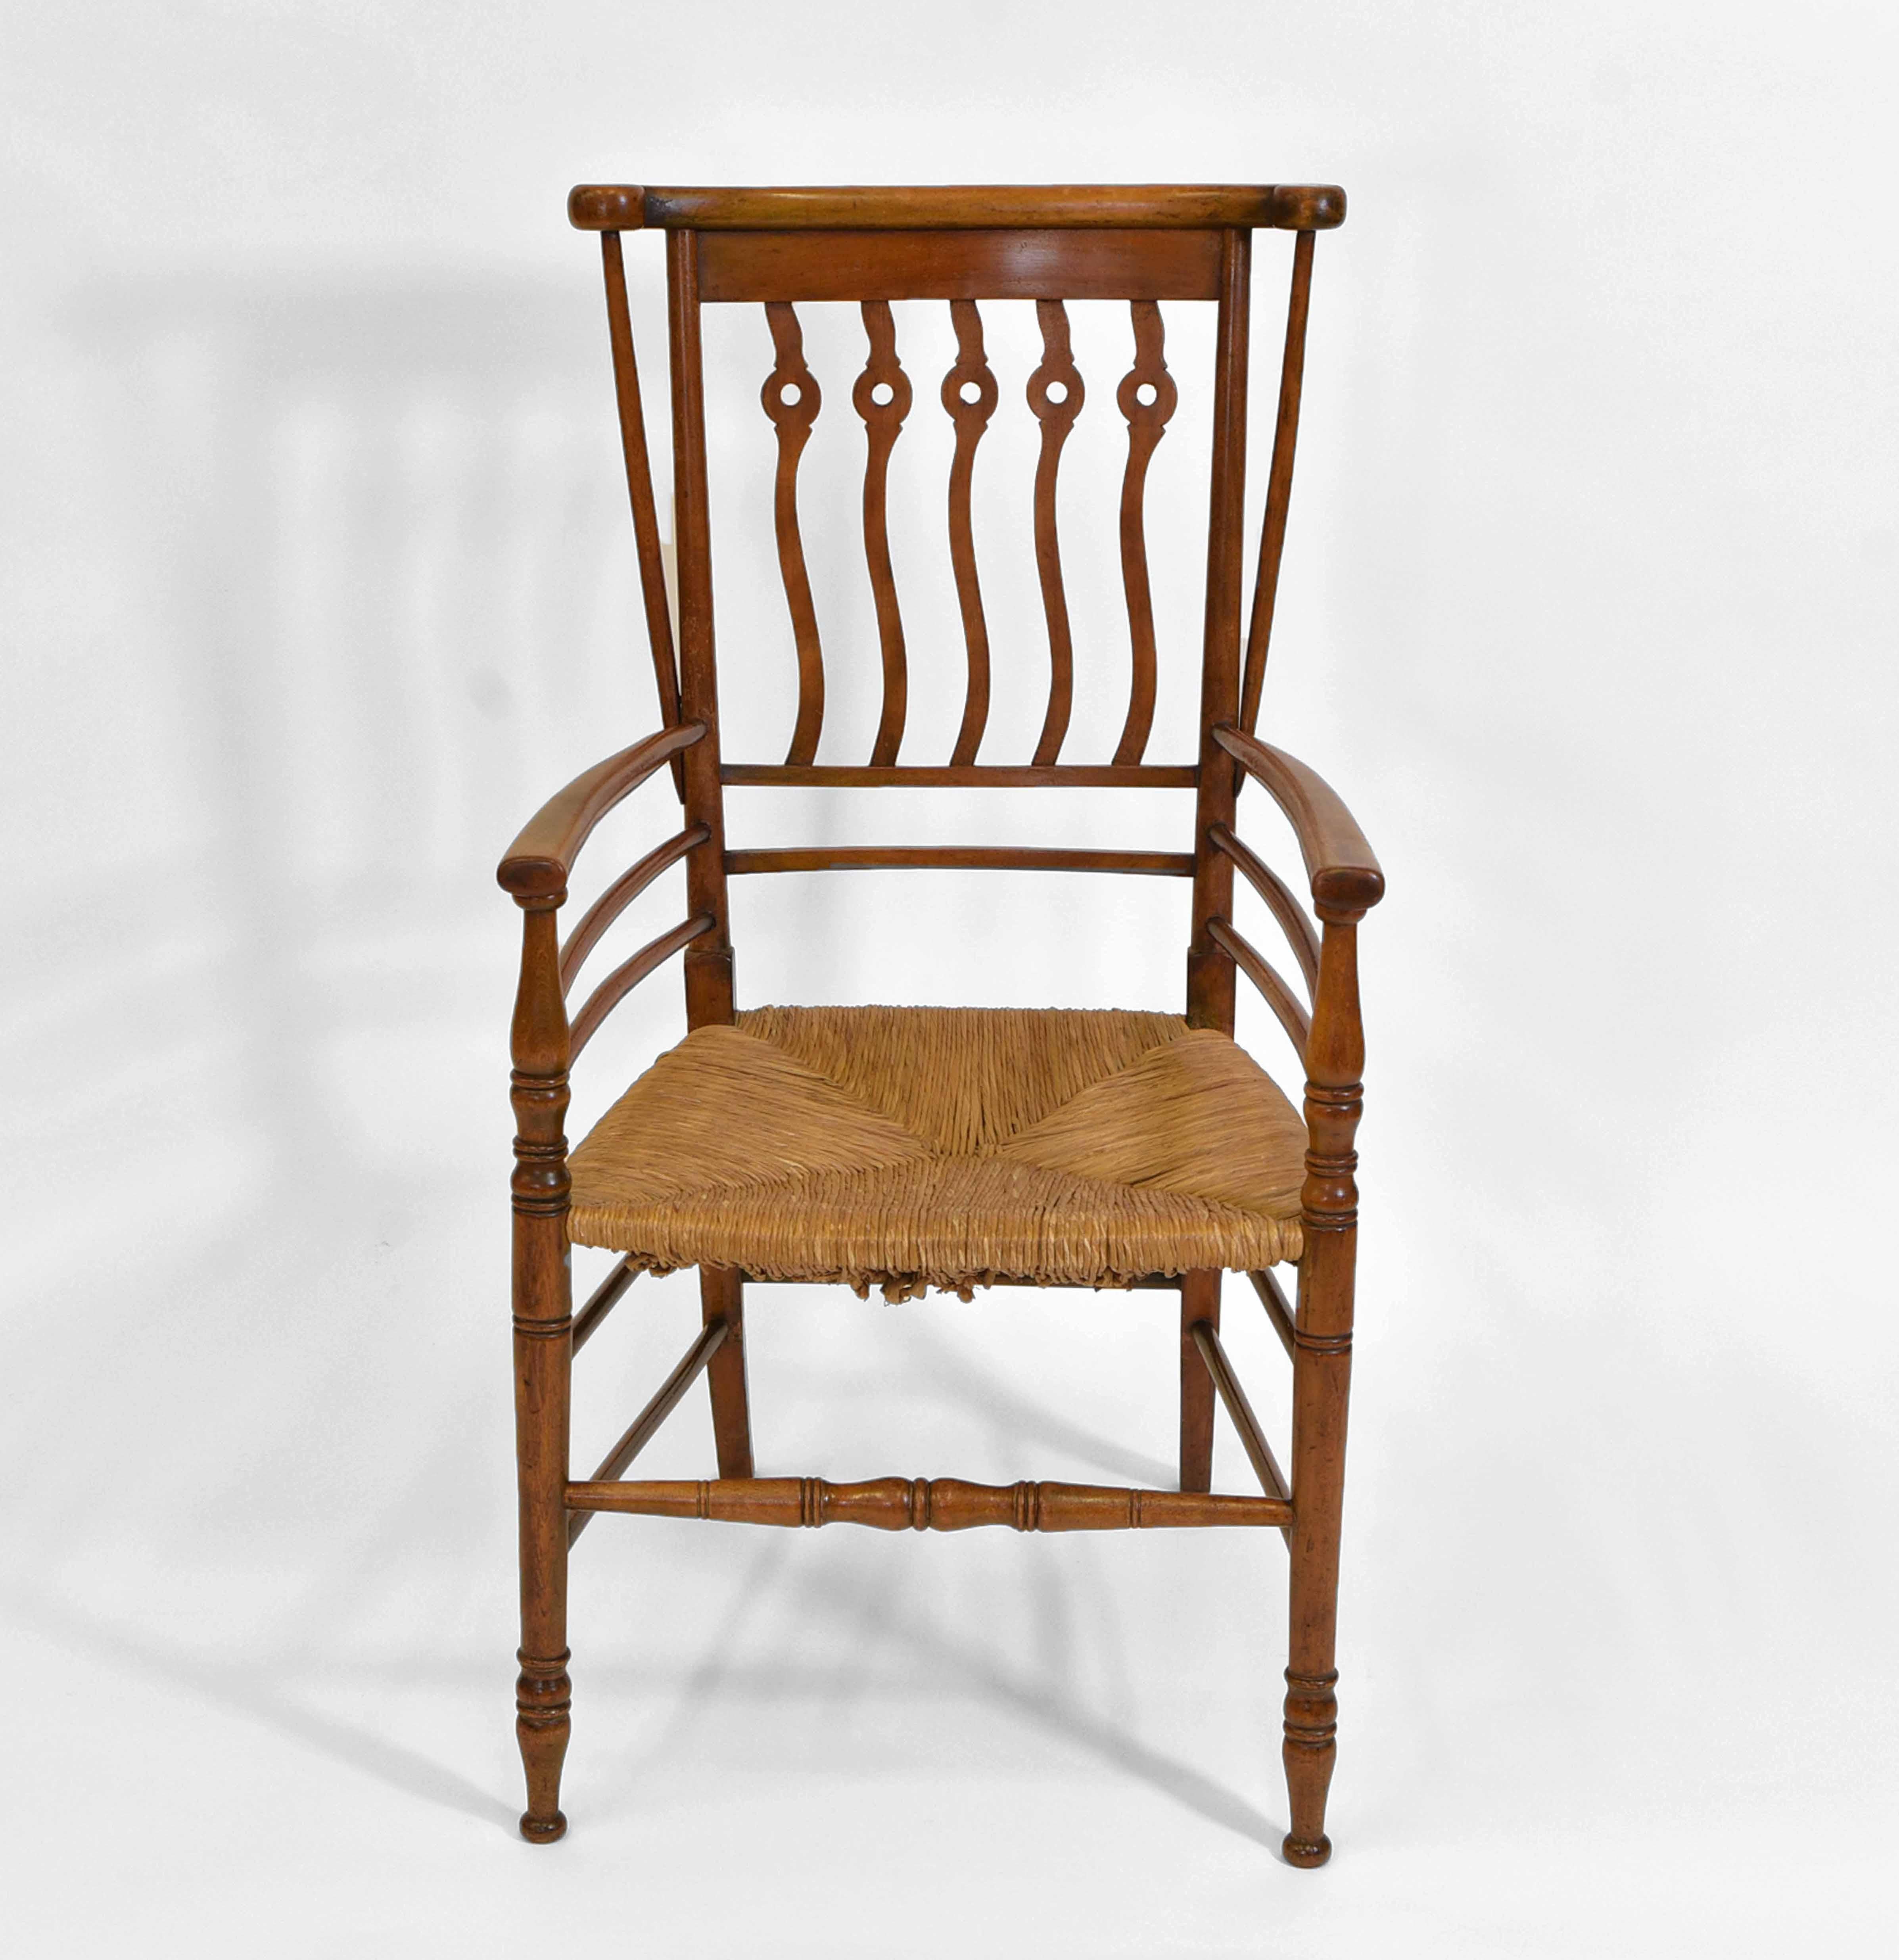 Ein stilvoller englischer Arts-and-Crafts-Sessel aus Buche und Obstholz mit Binsen-Sitz, mit gewelltem und durchbrochenem Design-Splat. Wahrscheinlich in High Wycombe hergestellt. Um 1900.

*Gratislieferung nur für alle Gebiete auf dem englischen